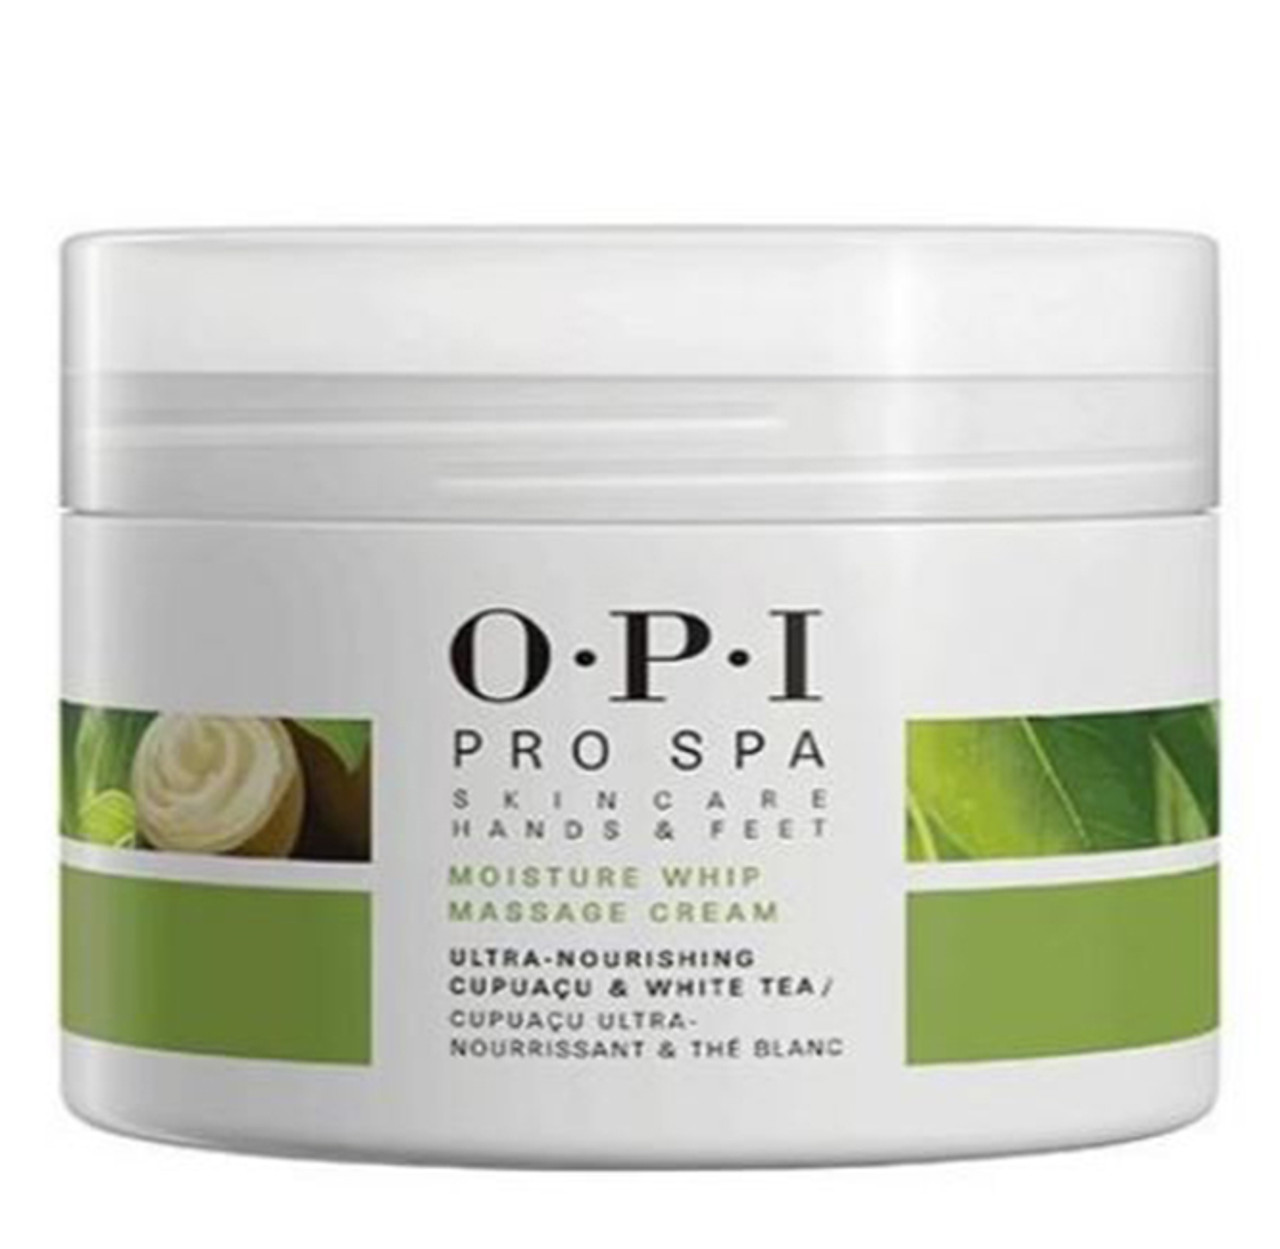 OPI Moisture Whip Massage Cream - 8 oz / 236 g